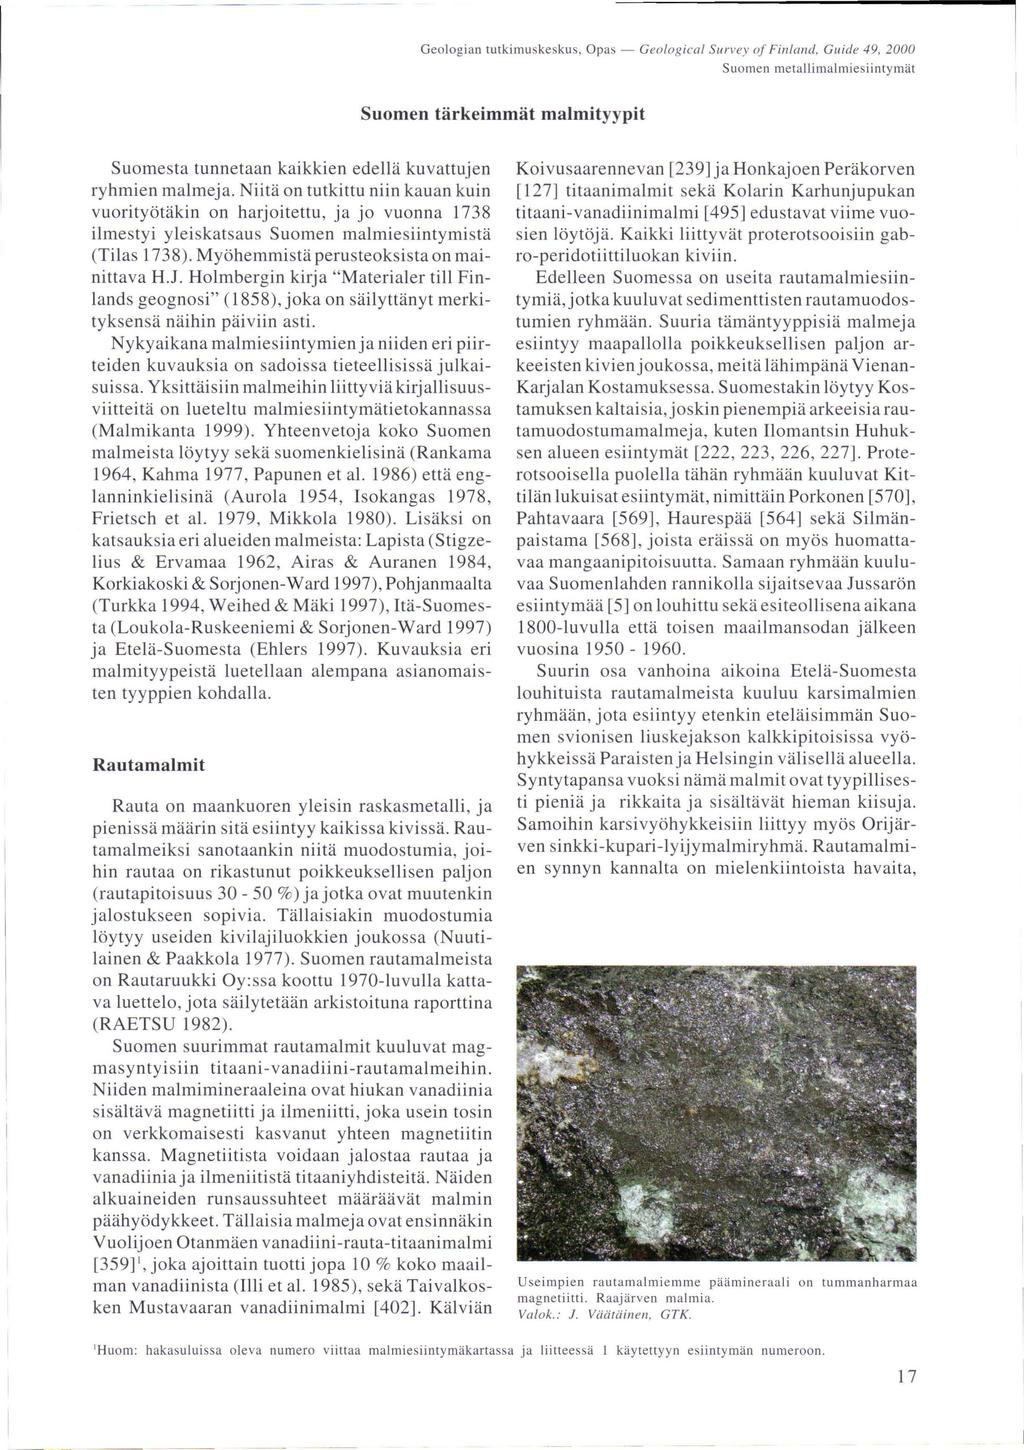 Geologian tutkimuskeskus, Opas - Geological Survey oj Finlalld, Guide 49, 2000 Suomen metallimalmiesiintymät Suomen tärkeimmät malmityypit Suomesta tunnetaan kaikkien edellä kuvattujen ryhmien